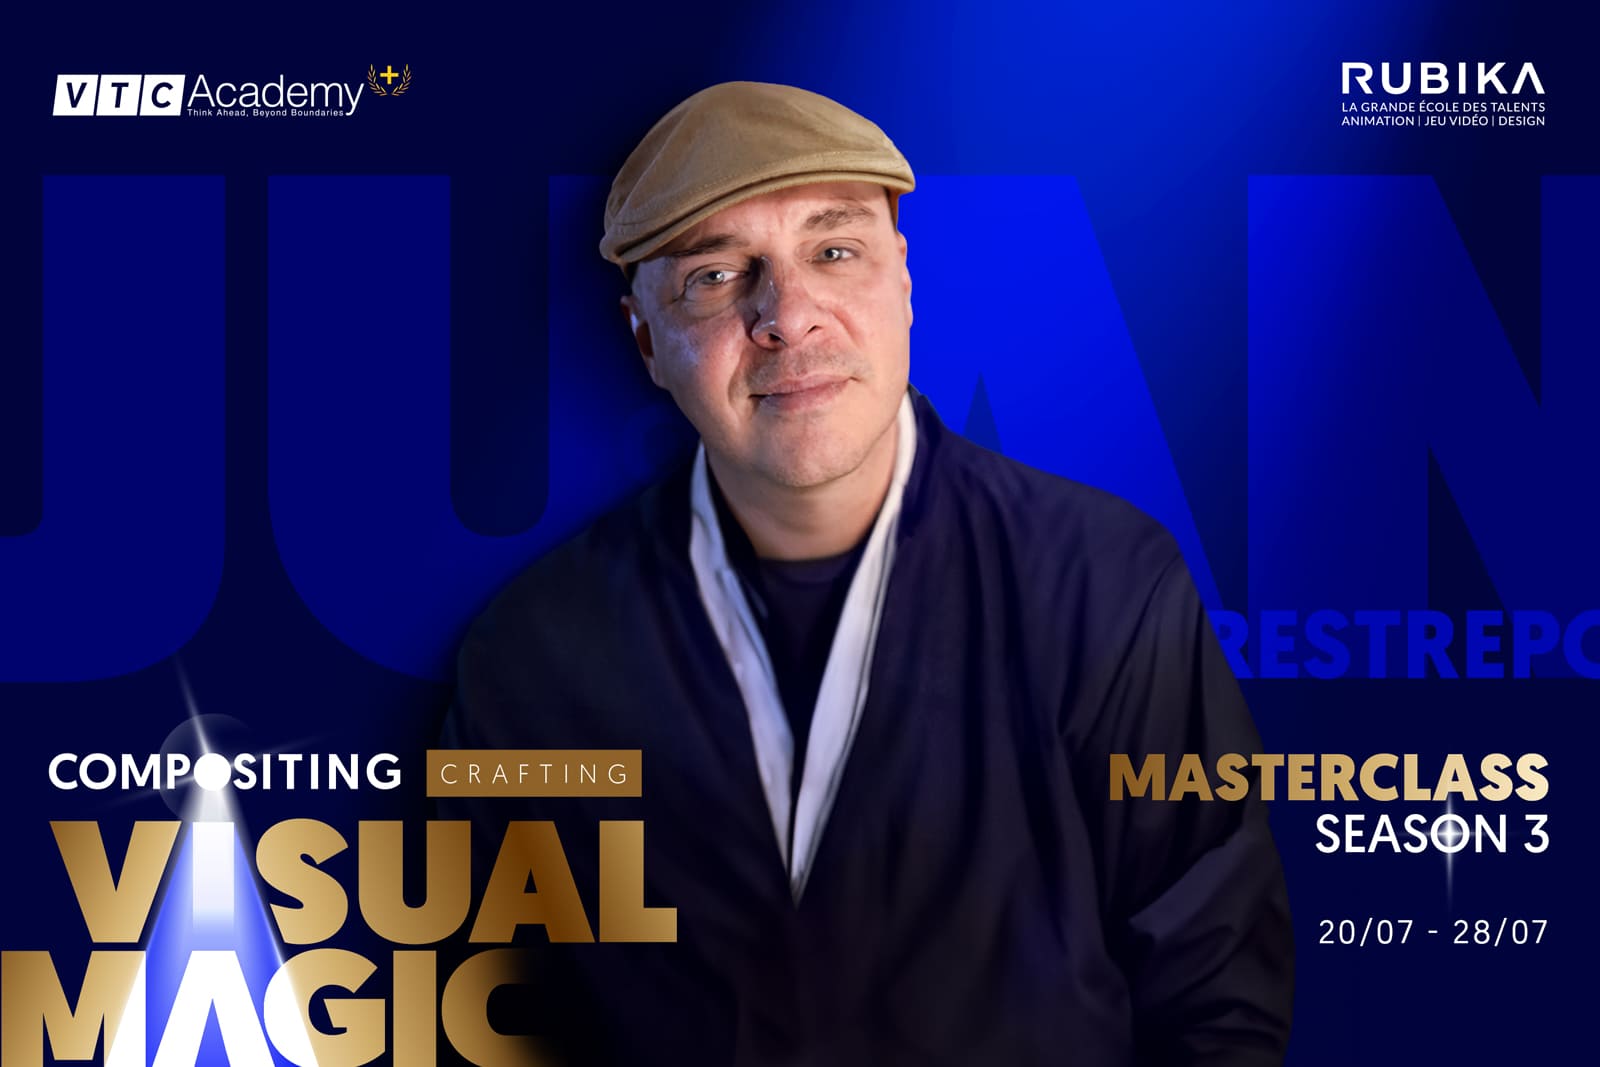 Tuần lễ Masterclass mùa 3 đã trở lại với chủ đề “Compositing: Crafting visual magic” cùng chuyên gia quốc tế Juan Restrepo với 23 năm kinh nghiệm